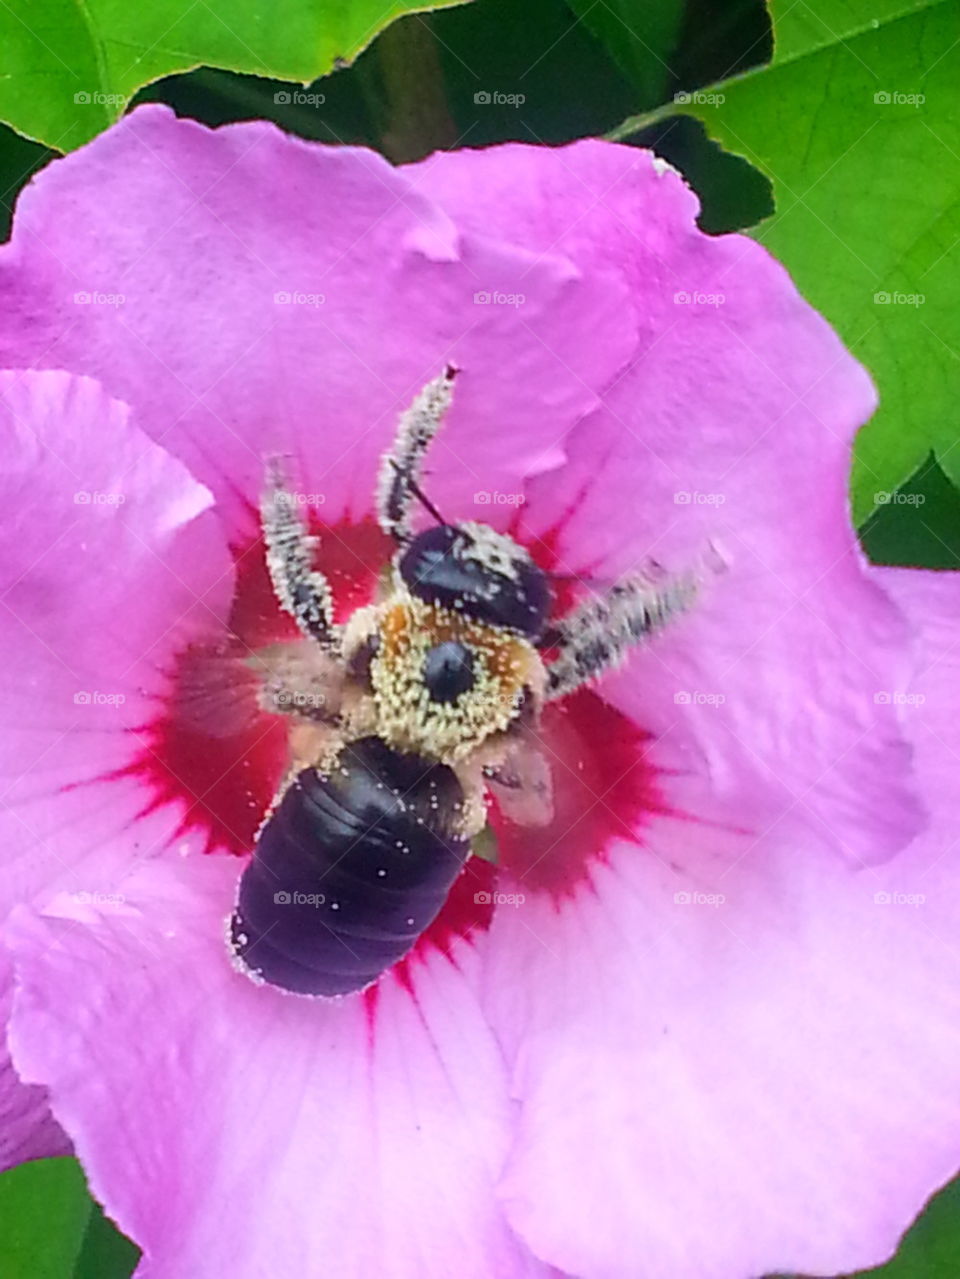 Flying Bee in a Flower